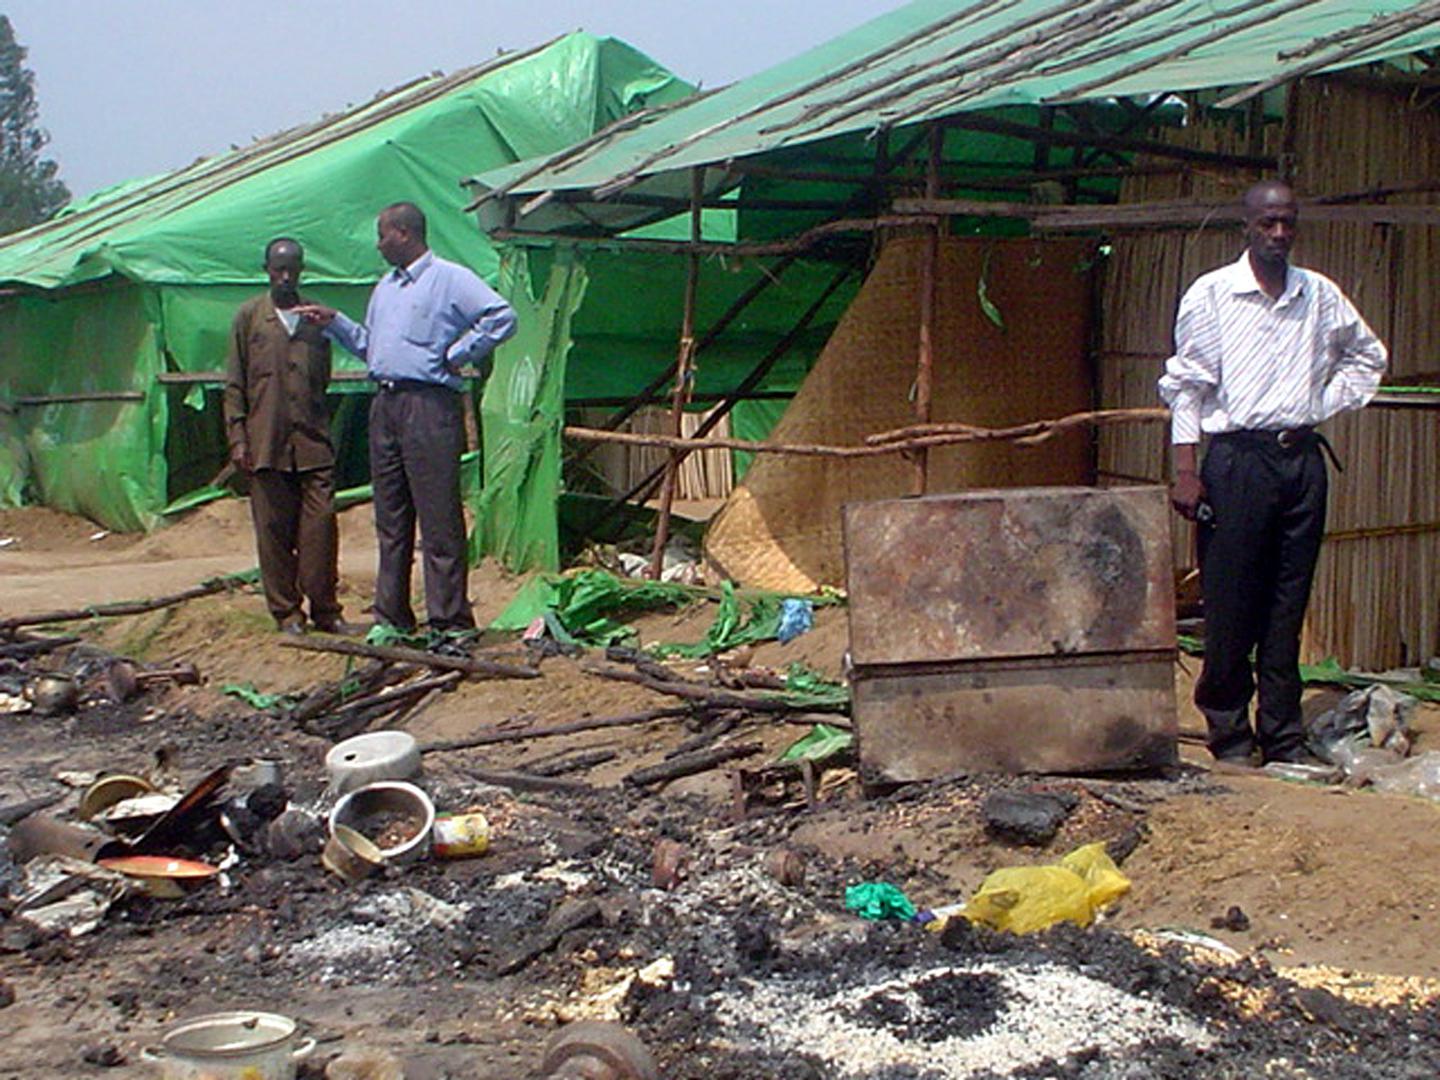 Des enquêteurs burundais examinent le lieu du massacre au cours duquel plus de 150 Tutsis congolais ont été tués à Gatumba, un camp de réfugiés géré par l’ONU au Burundi, le 17 août 2004.